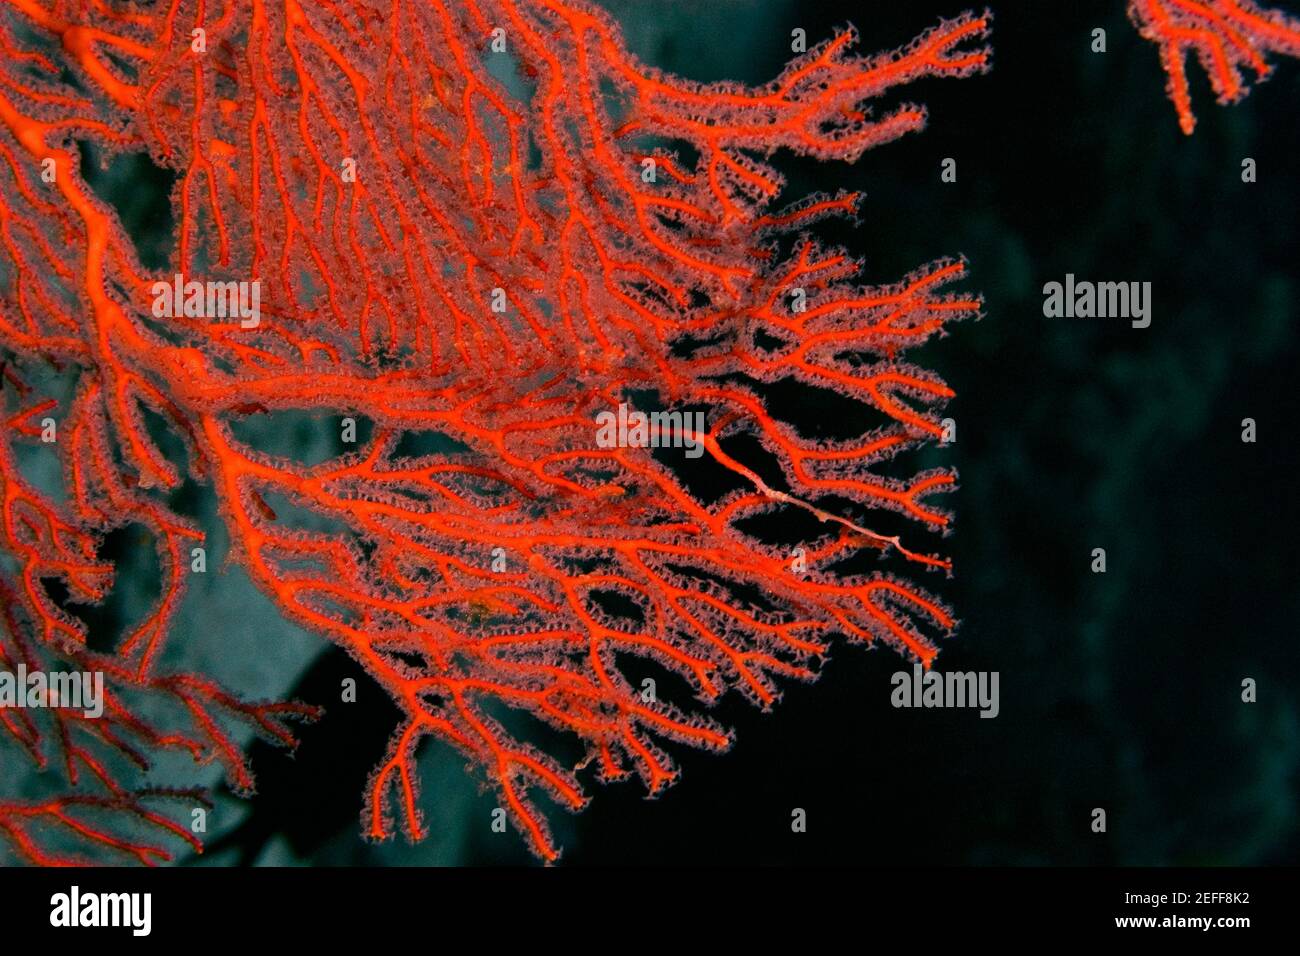 Gros plan d'un ventilateur de mer gorgonien Subergorgia mollis sous l'eau, Milne Bay, Papouasie-Nouvelle-Guinée Banque D'Images